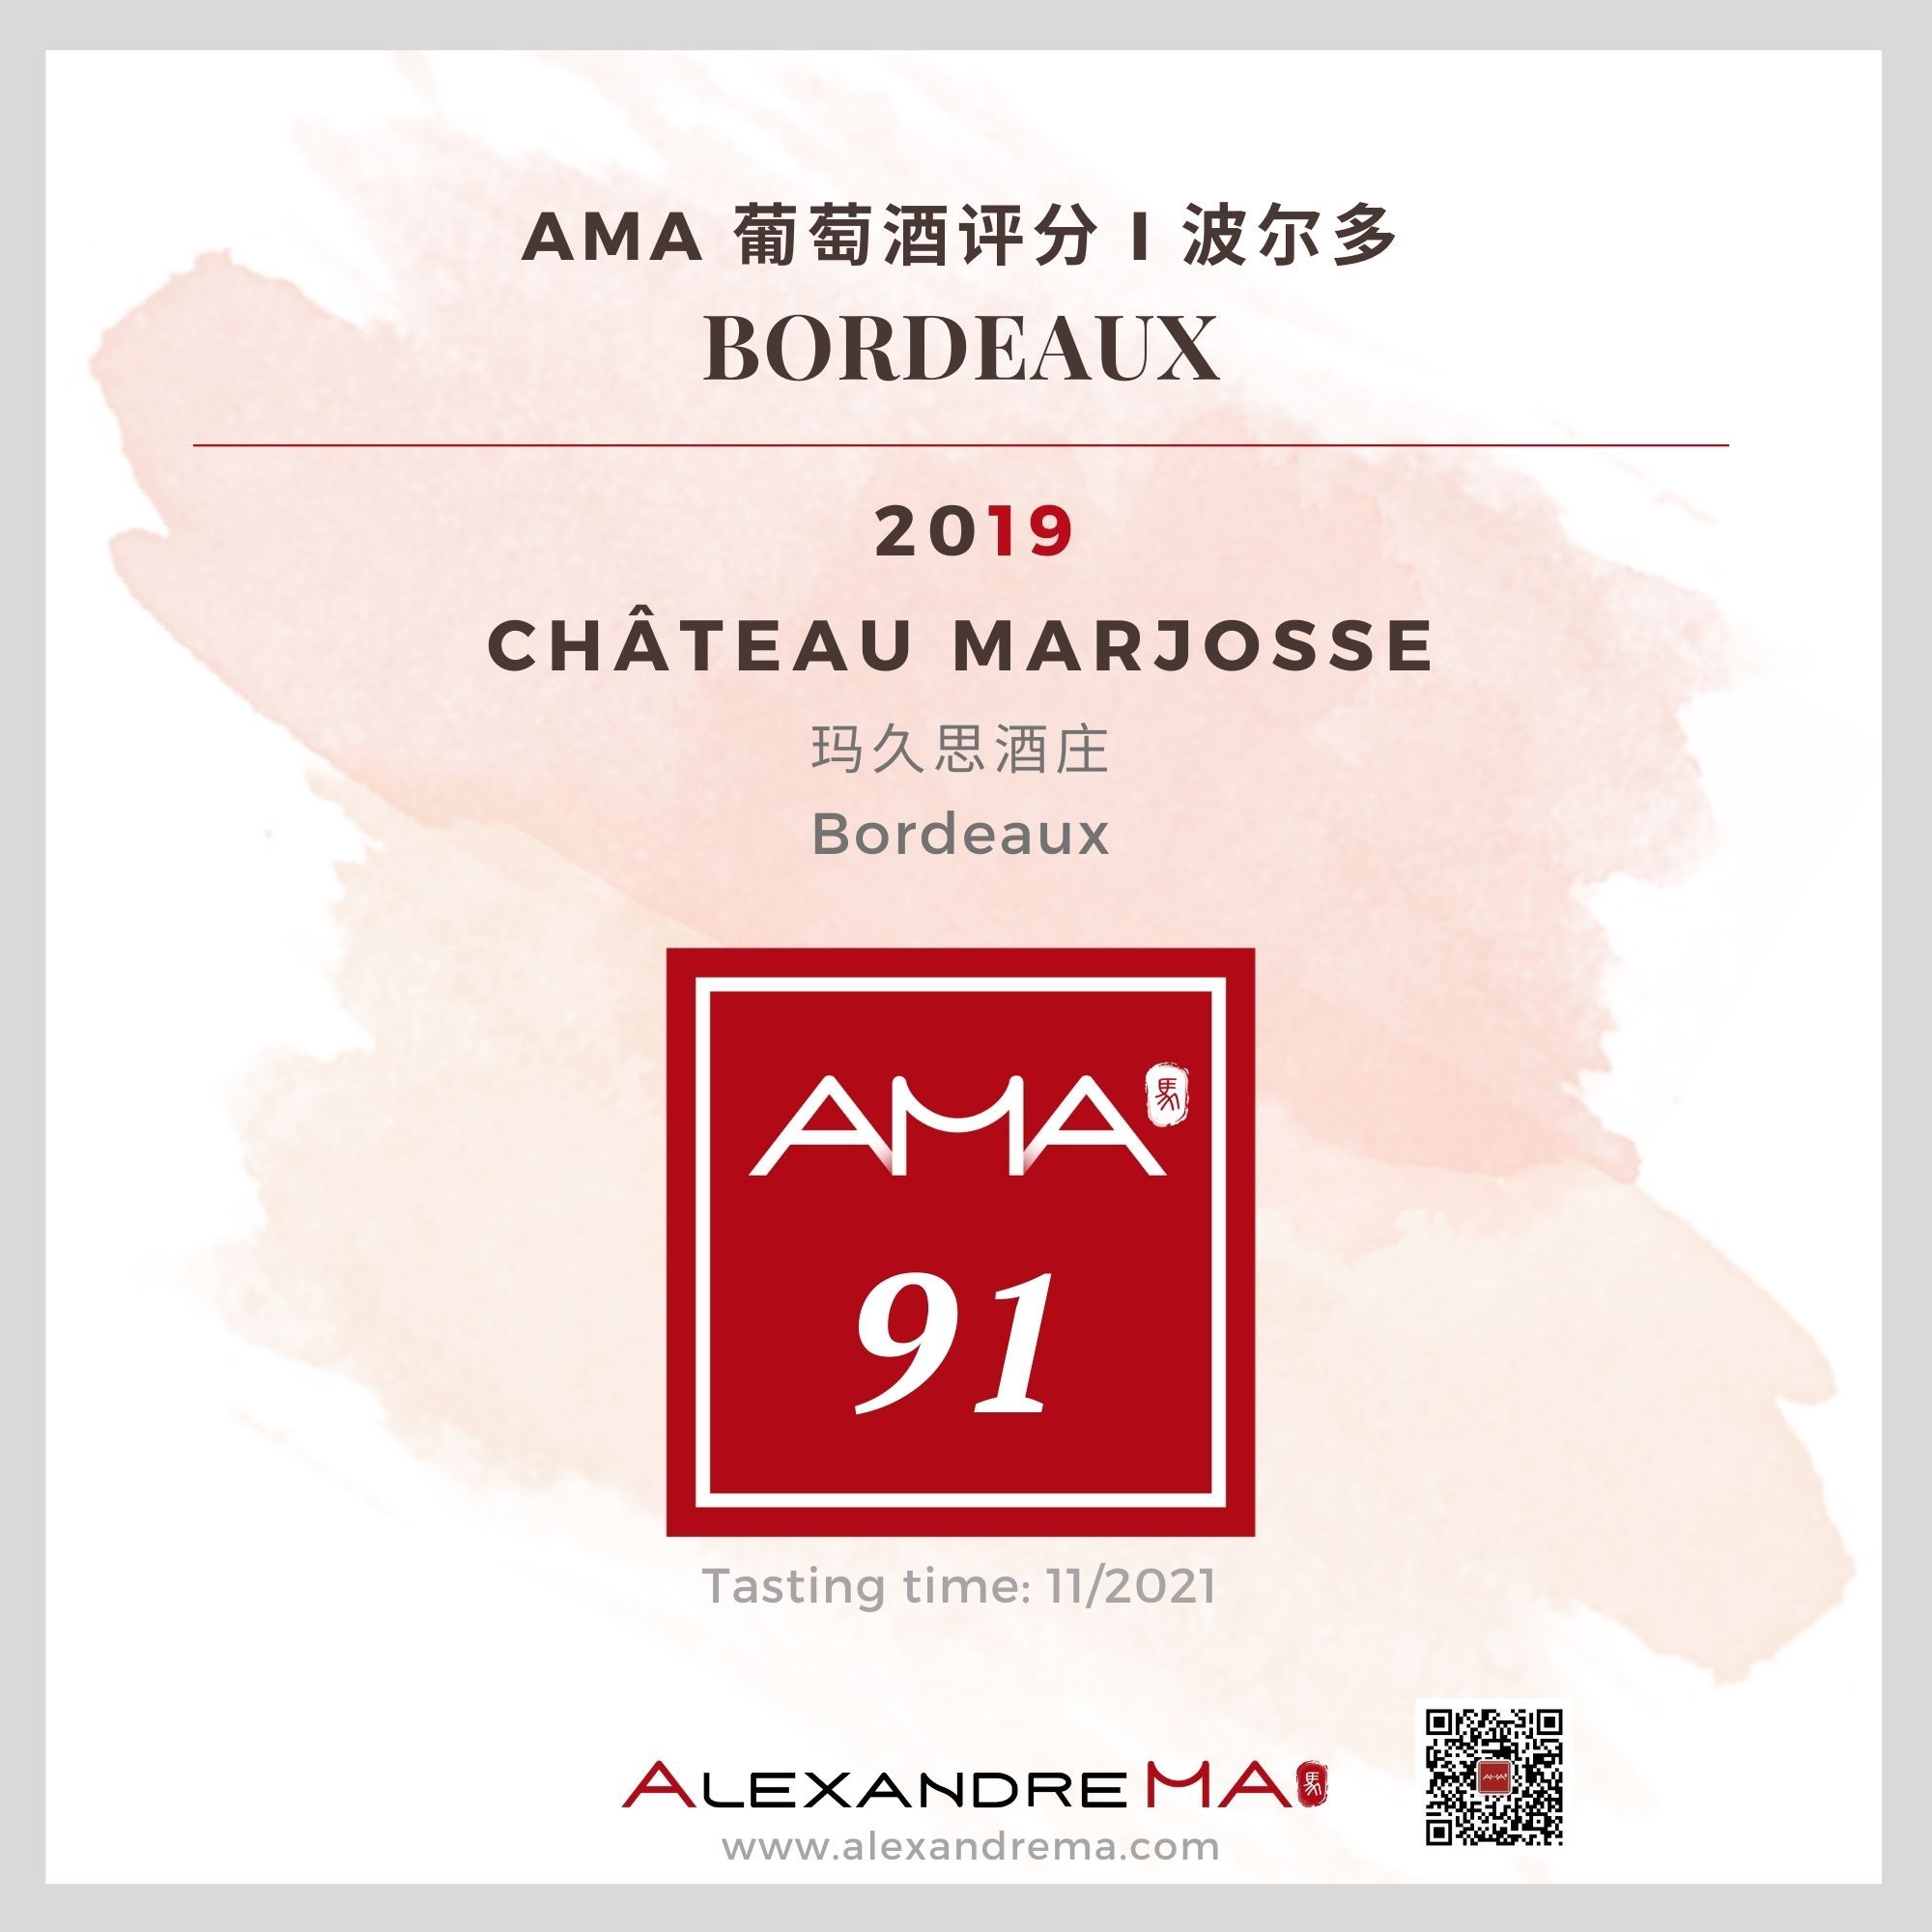 Château Marjosse 2019 玛久思酒庄 - Alexandre Ma